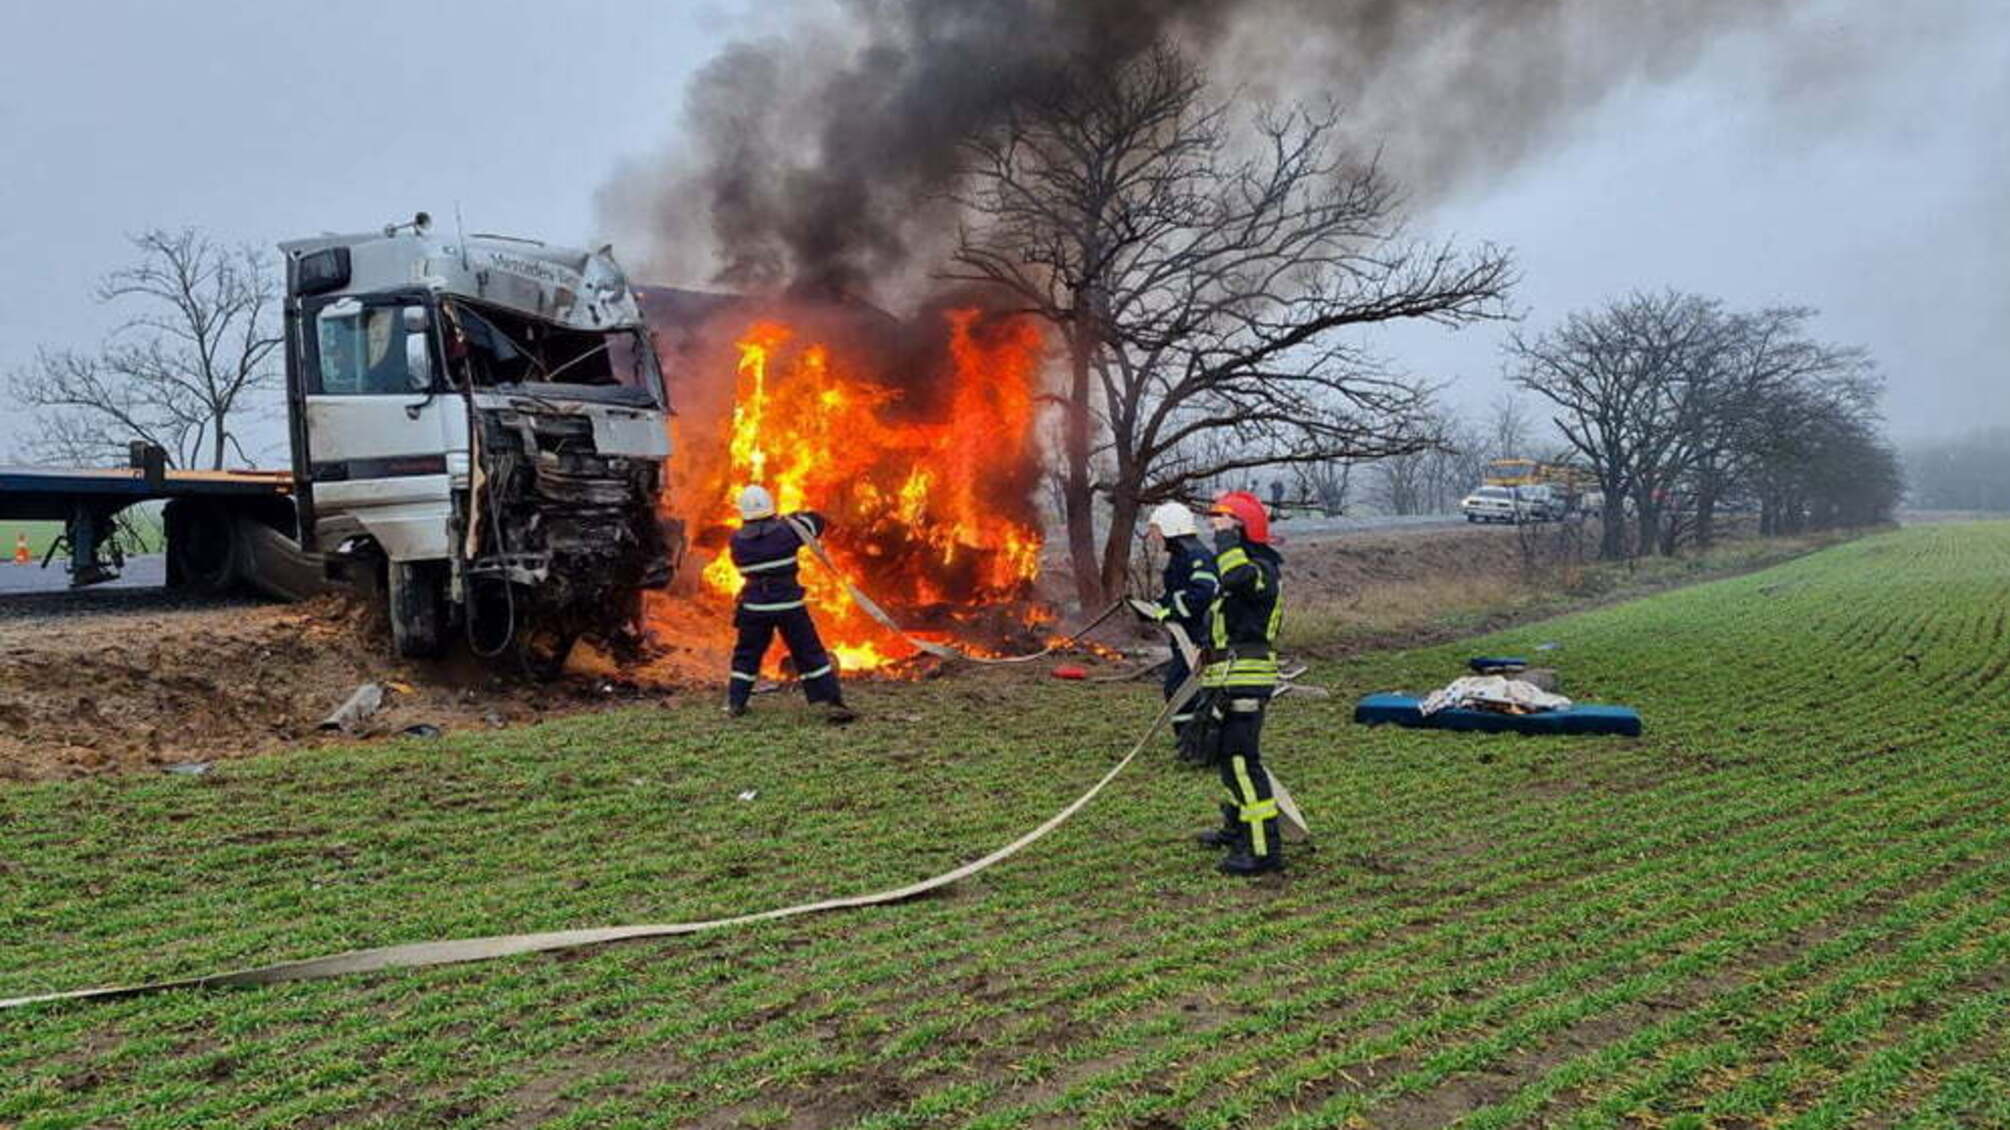 Миколаївська область: рятувальники ліквідували пожежу вантажівки, яка зайнялась внаслідок дорожньо-транспортної пригоди